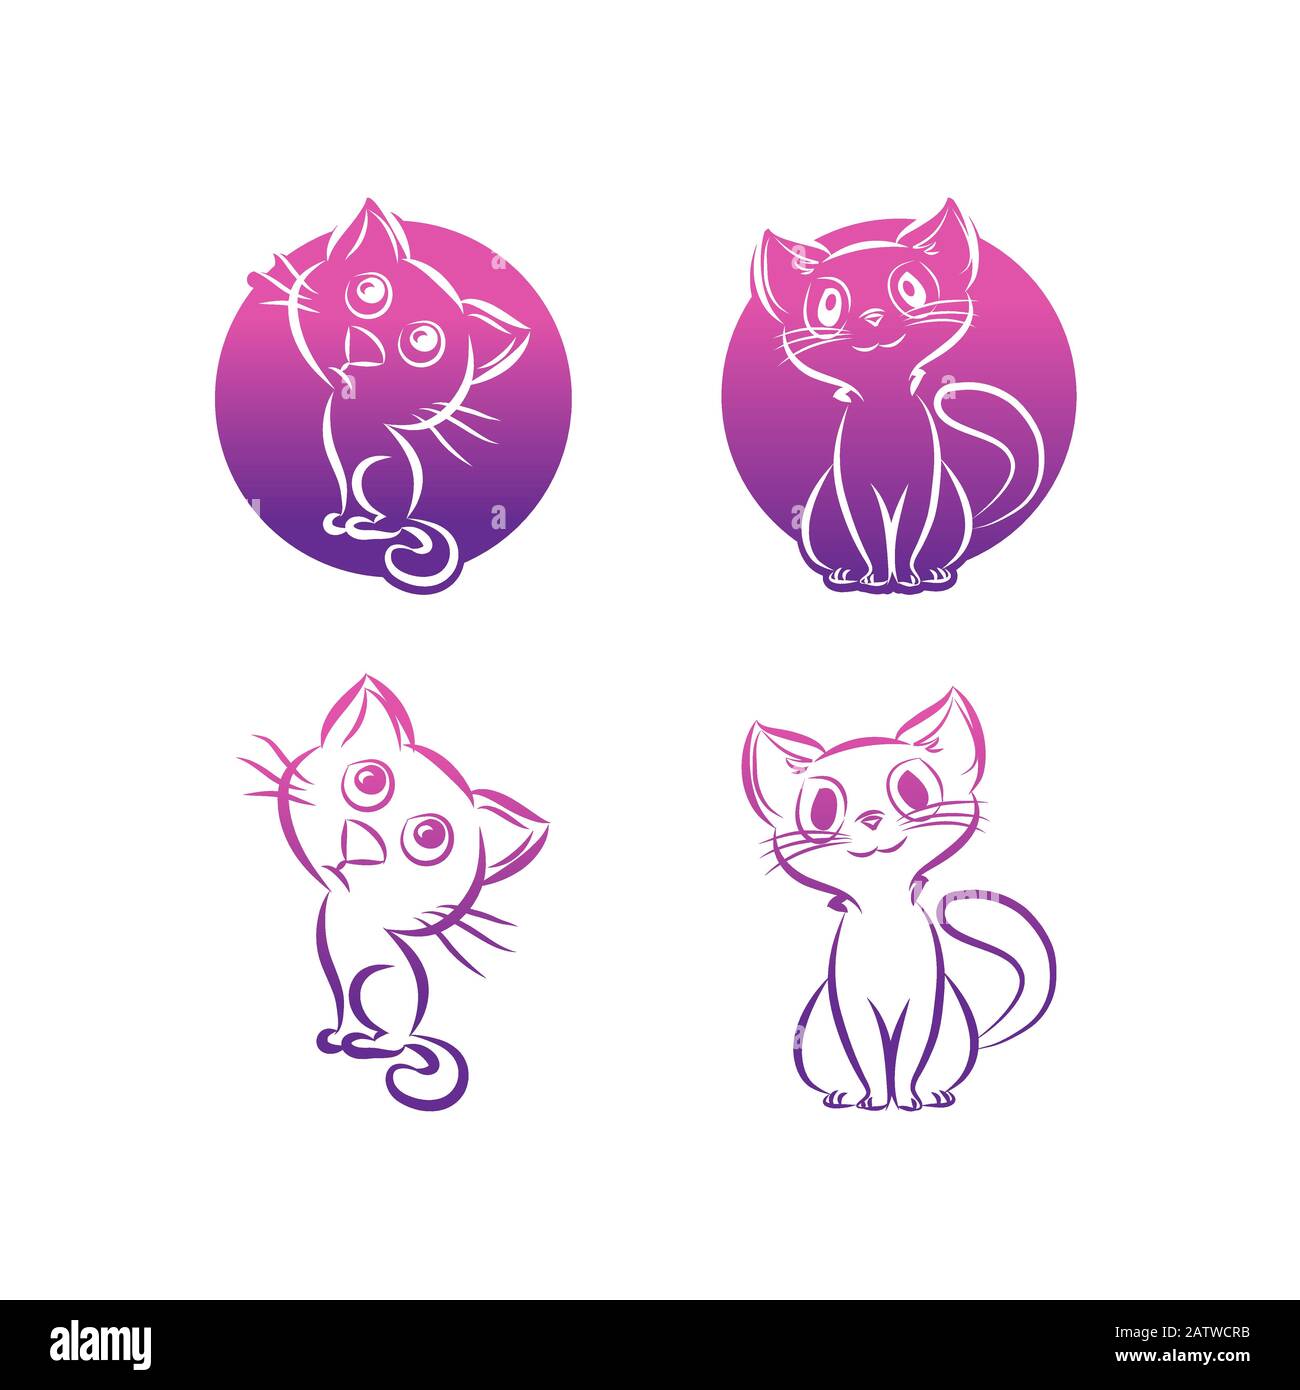 Einzeilige Silhouette im Katzen-Design. Handgezeichnete Vektorgrafiken im Minimalismus-Stil Stock Vektor